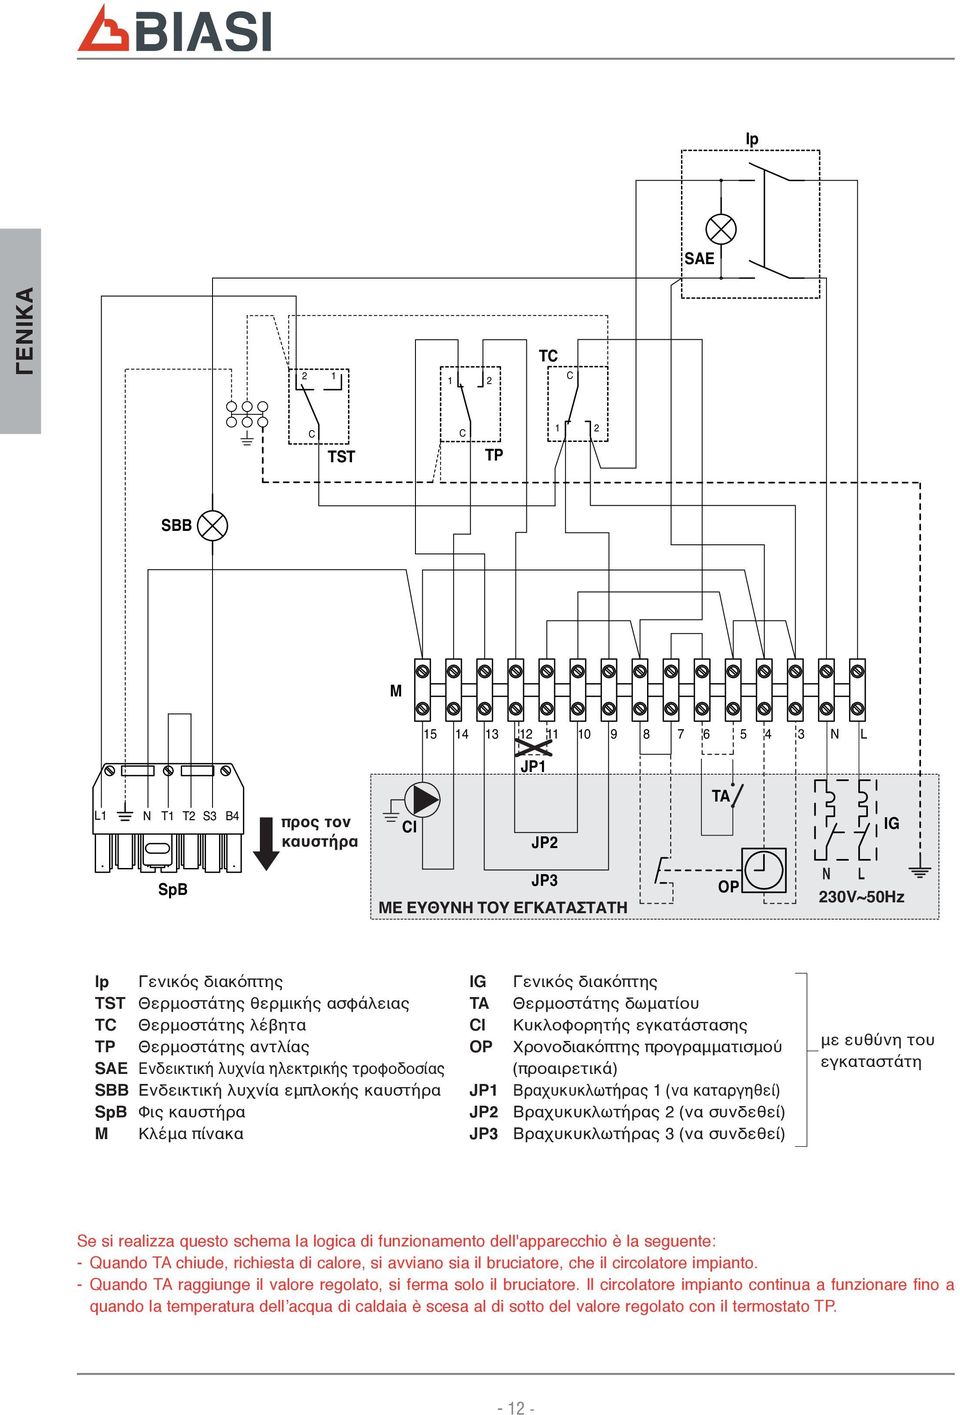 Γενικός διακόπτης TA Θερμοστάτης δωματίου CI Κυκλοφορητής εγκατάστασης OP Χρονοδιακόπτης προγραμματισμού (προαιρετικά) JP Βραχυκυκλωτήρας (να καταργηθεί) JP2 Βραχυκυκλωτήρας 2 (να συνδεθεί) JP3